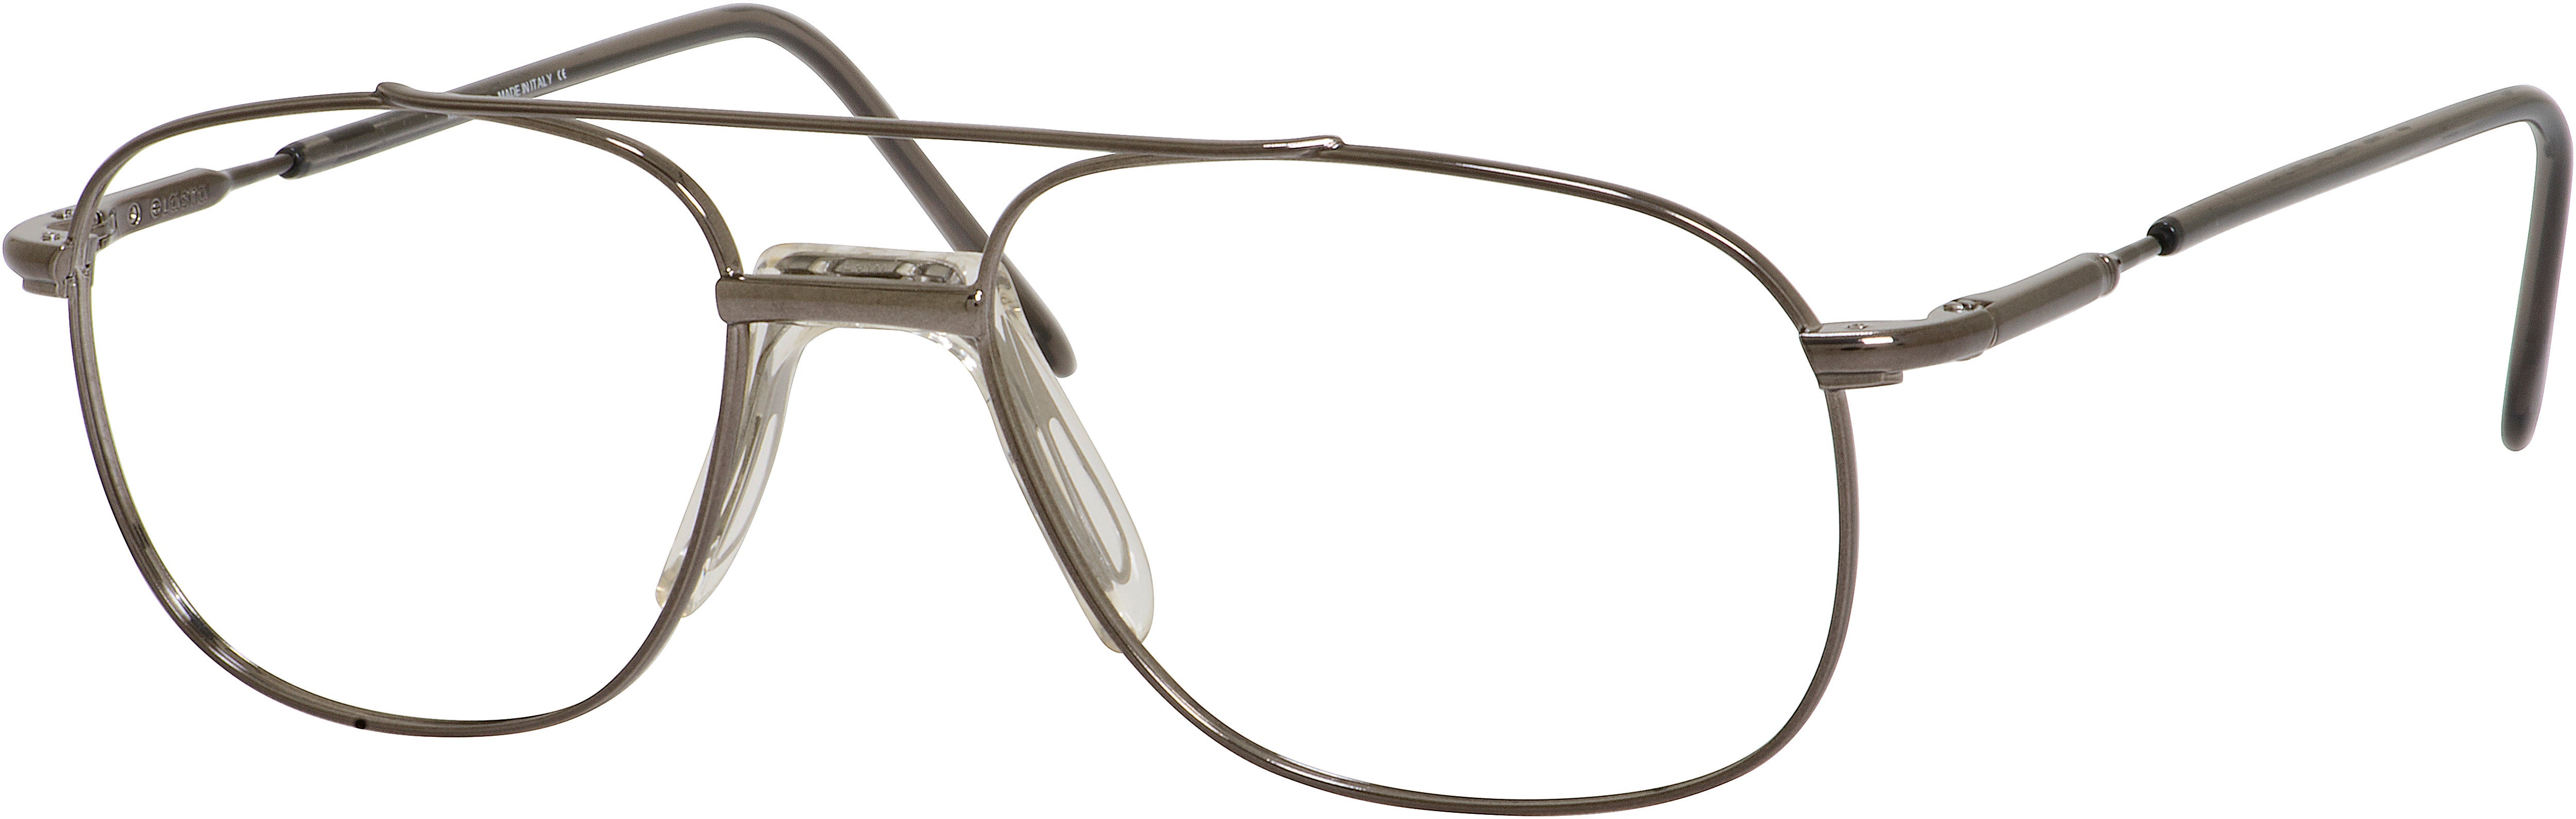  Elasta 7045 Rectangular Eyeglasses 0W2D-0W2D  Bakelite (00 Demo Lens)